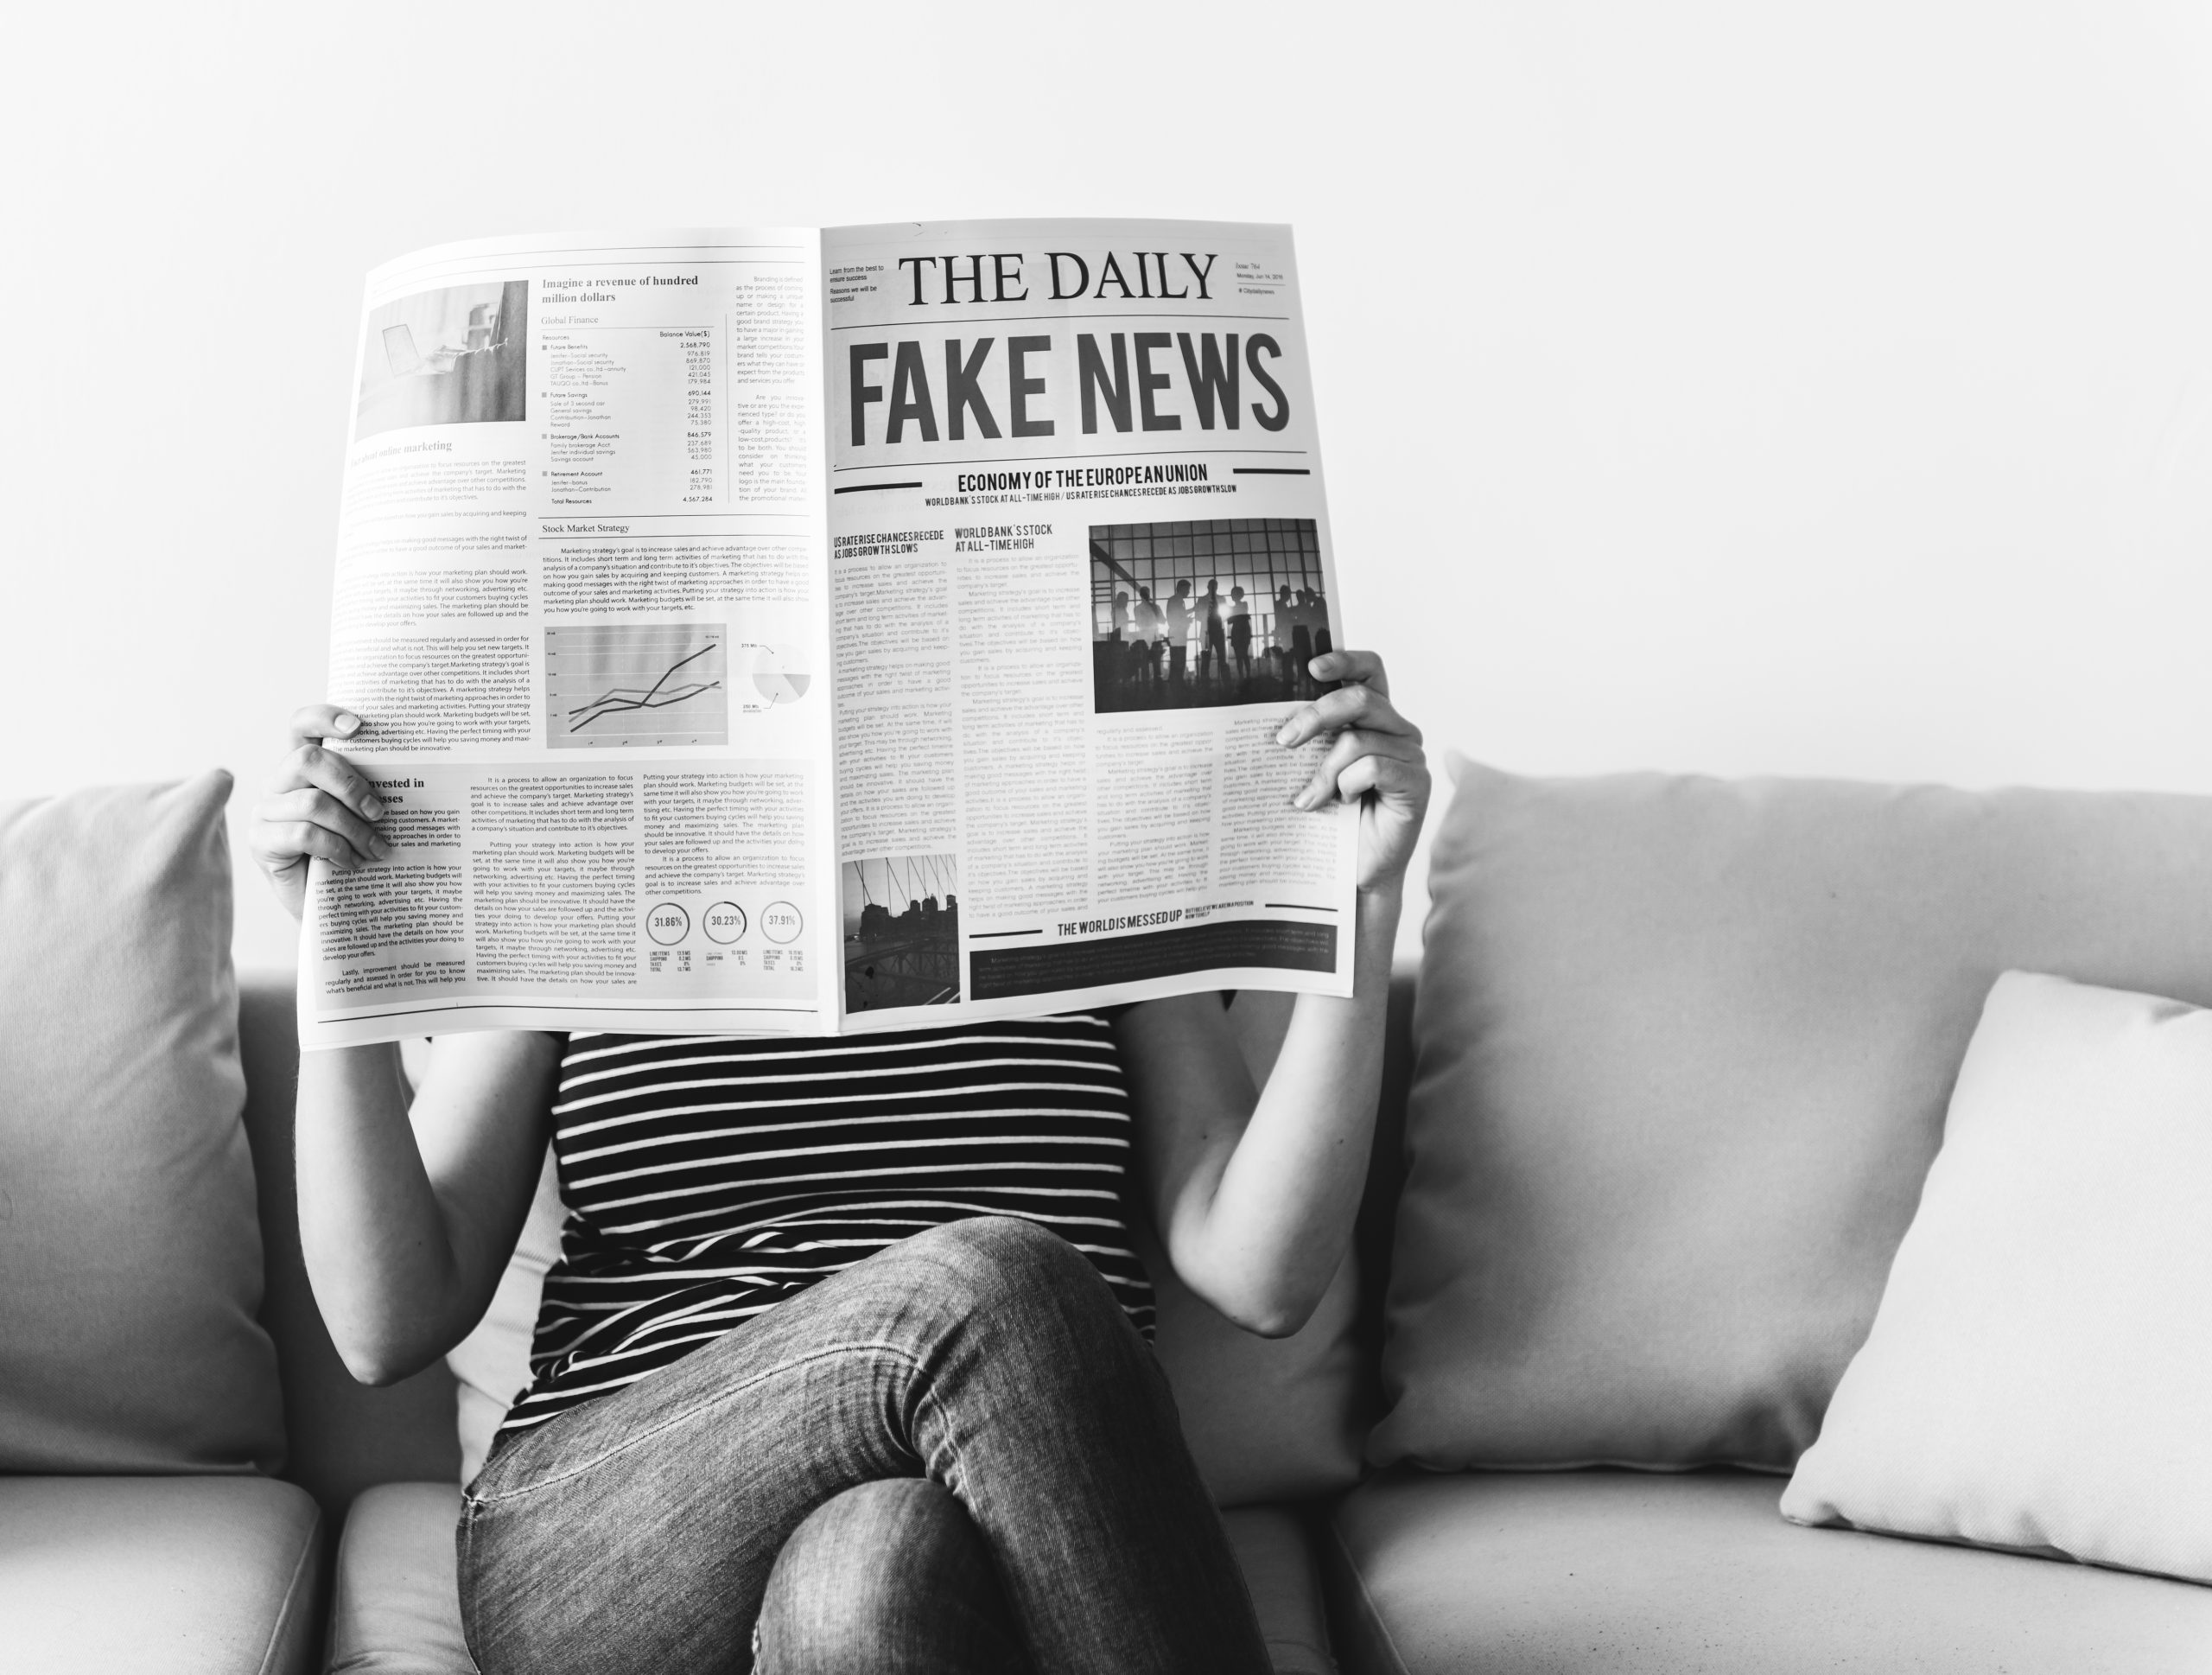 Eine Frau liest Zeitung auf der "Fake News" steht